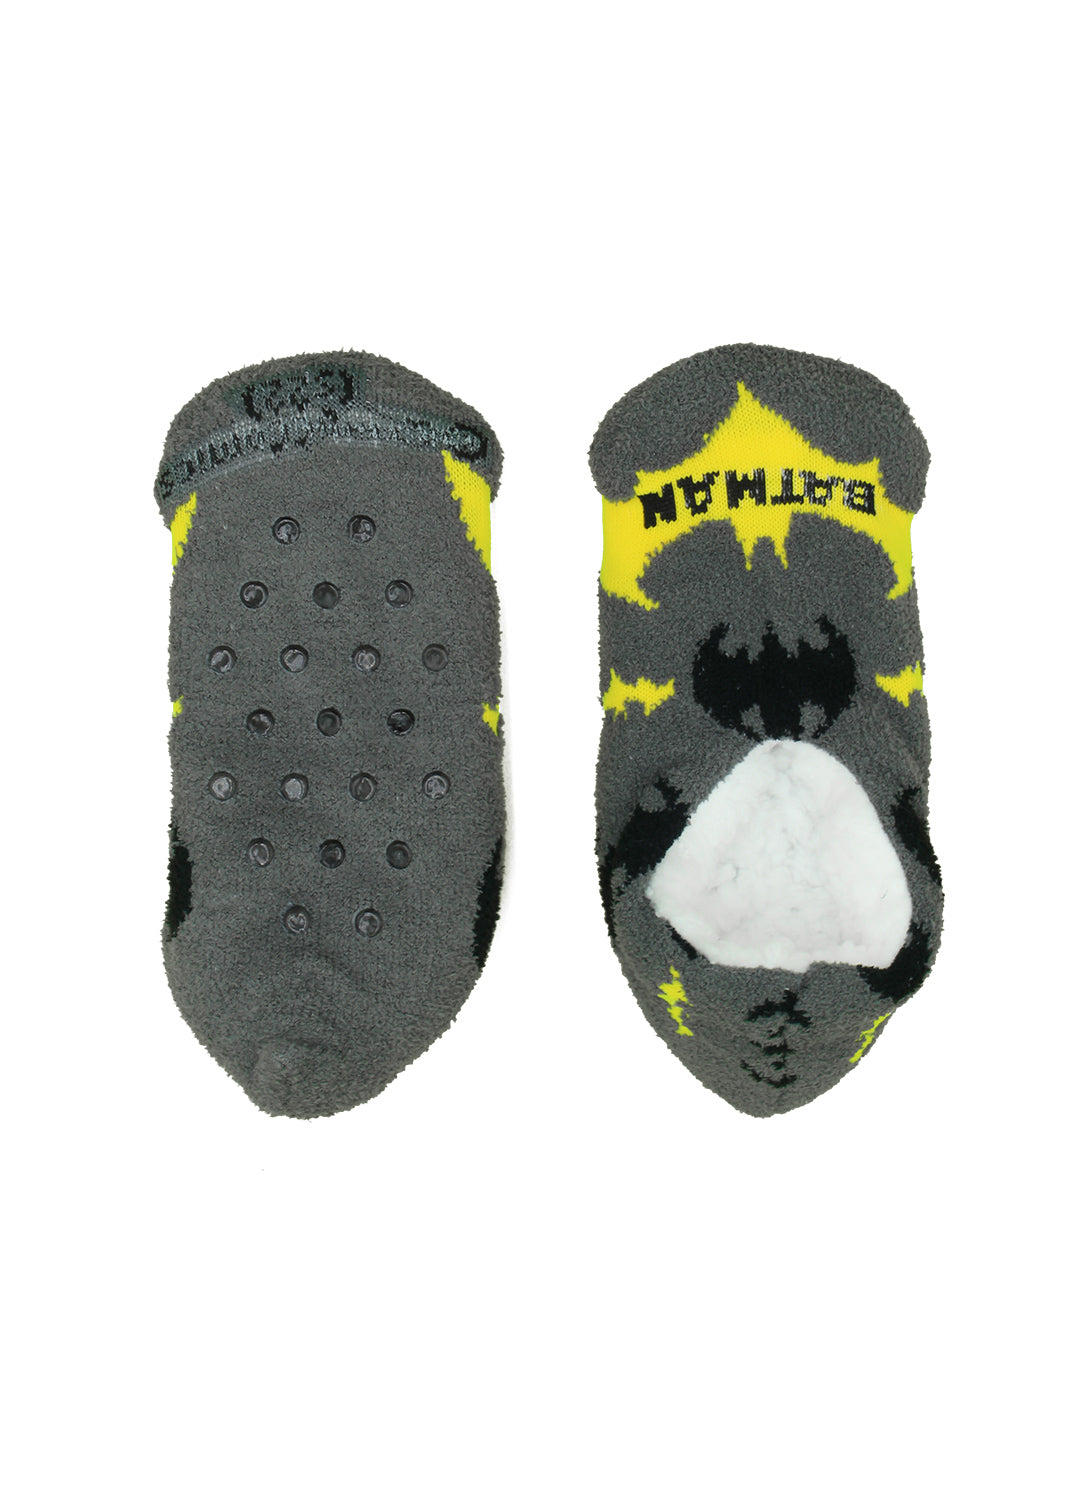 Boys Batman Slippers Socks - 2 Pack